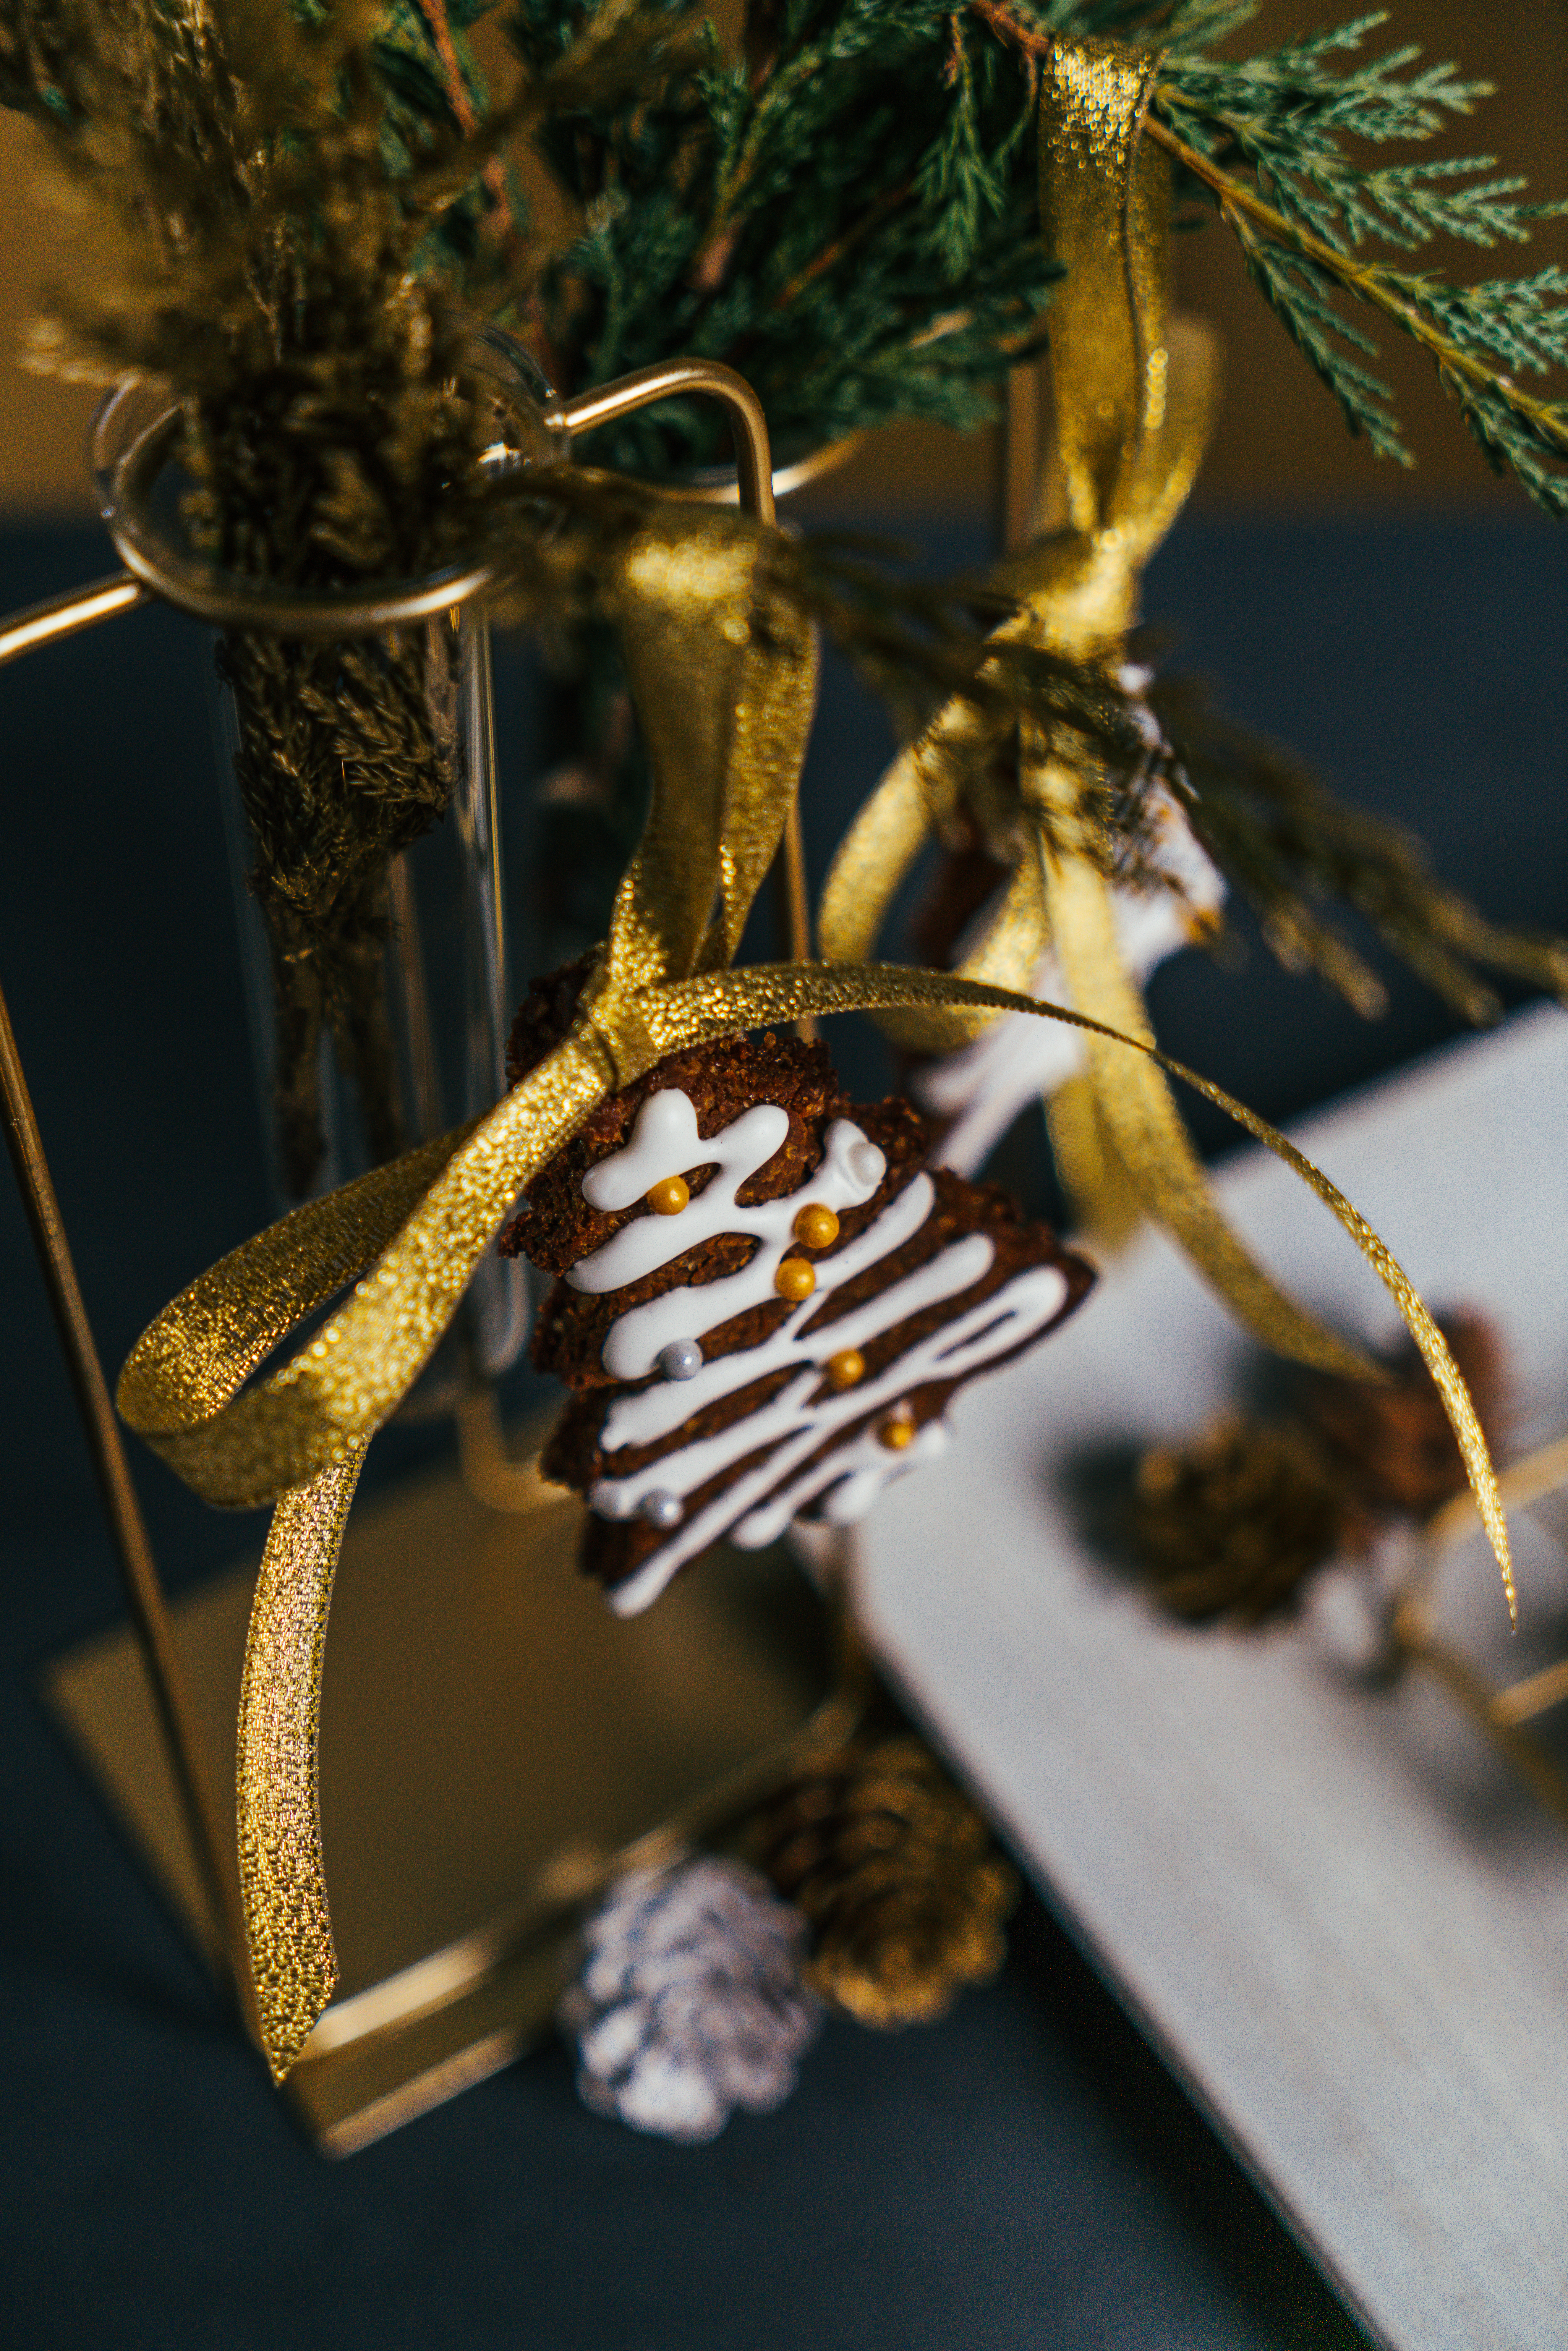 precioso adorno con cinta en dorado, galleta de jengibre decorada con glasé real casero, ornamentos navideños para decorar la casa 